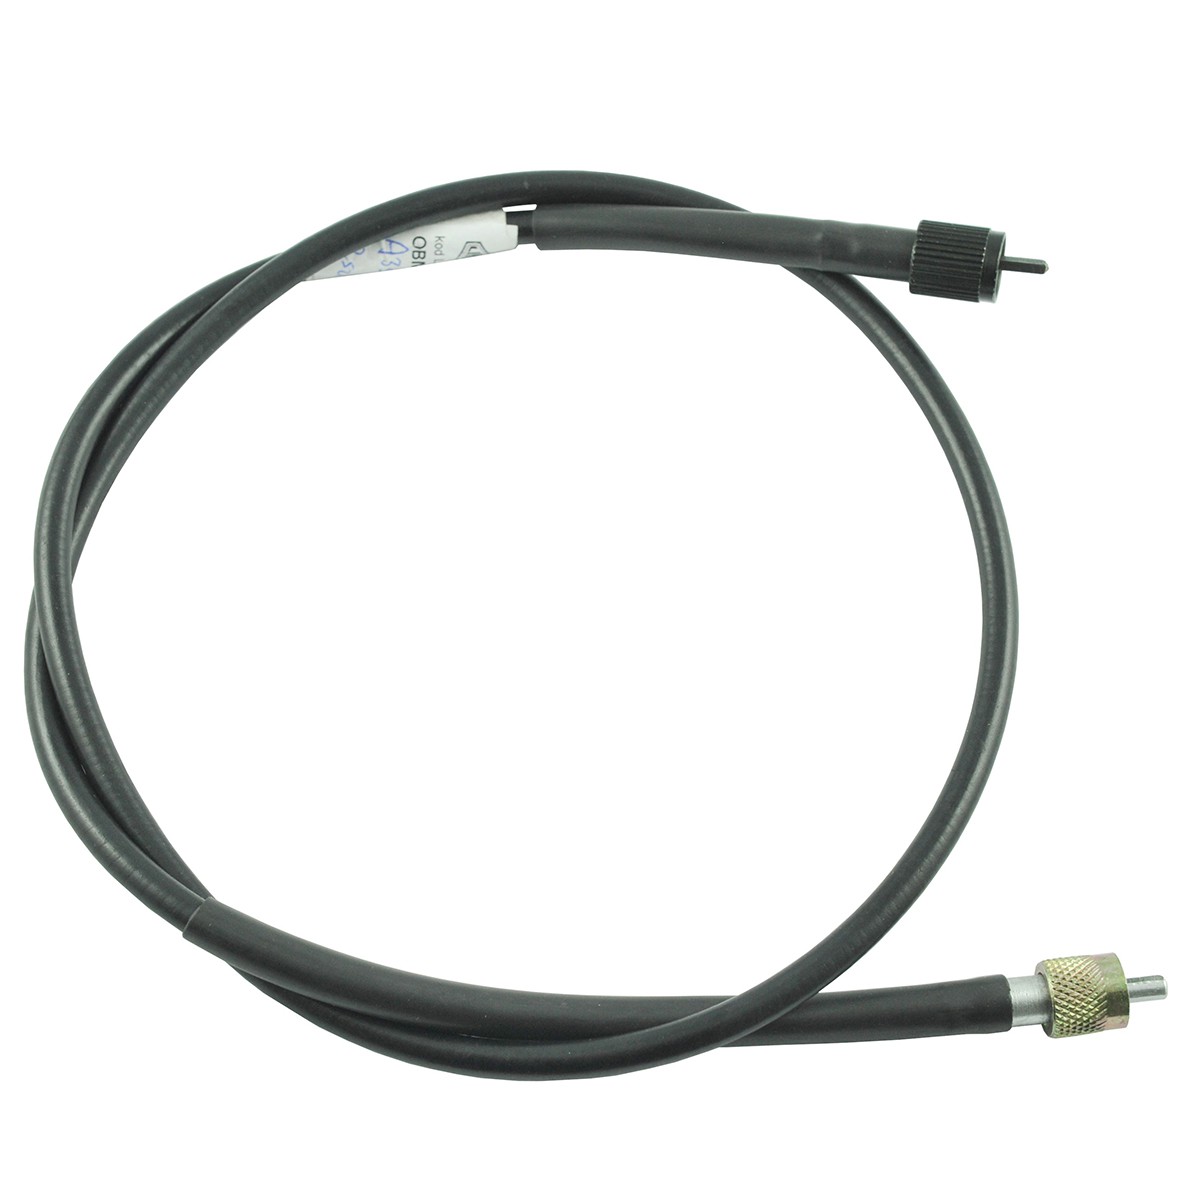 Cable contador / 1020 mm / Kubota L3608 / TC422-34653 / 5-25-123-18